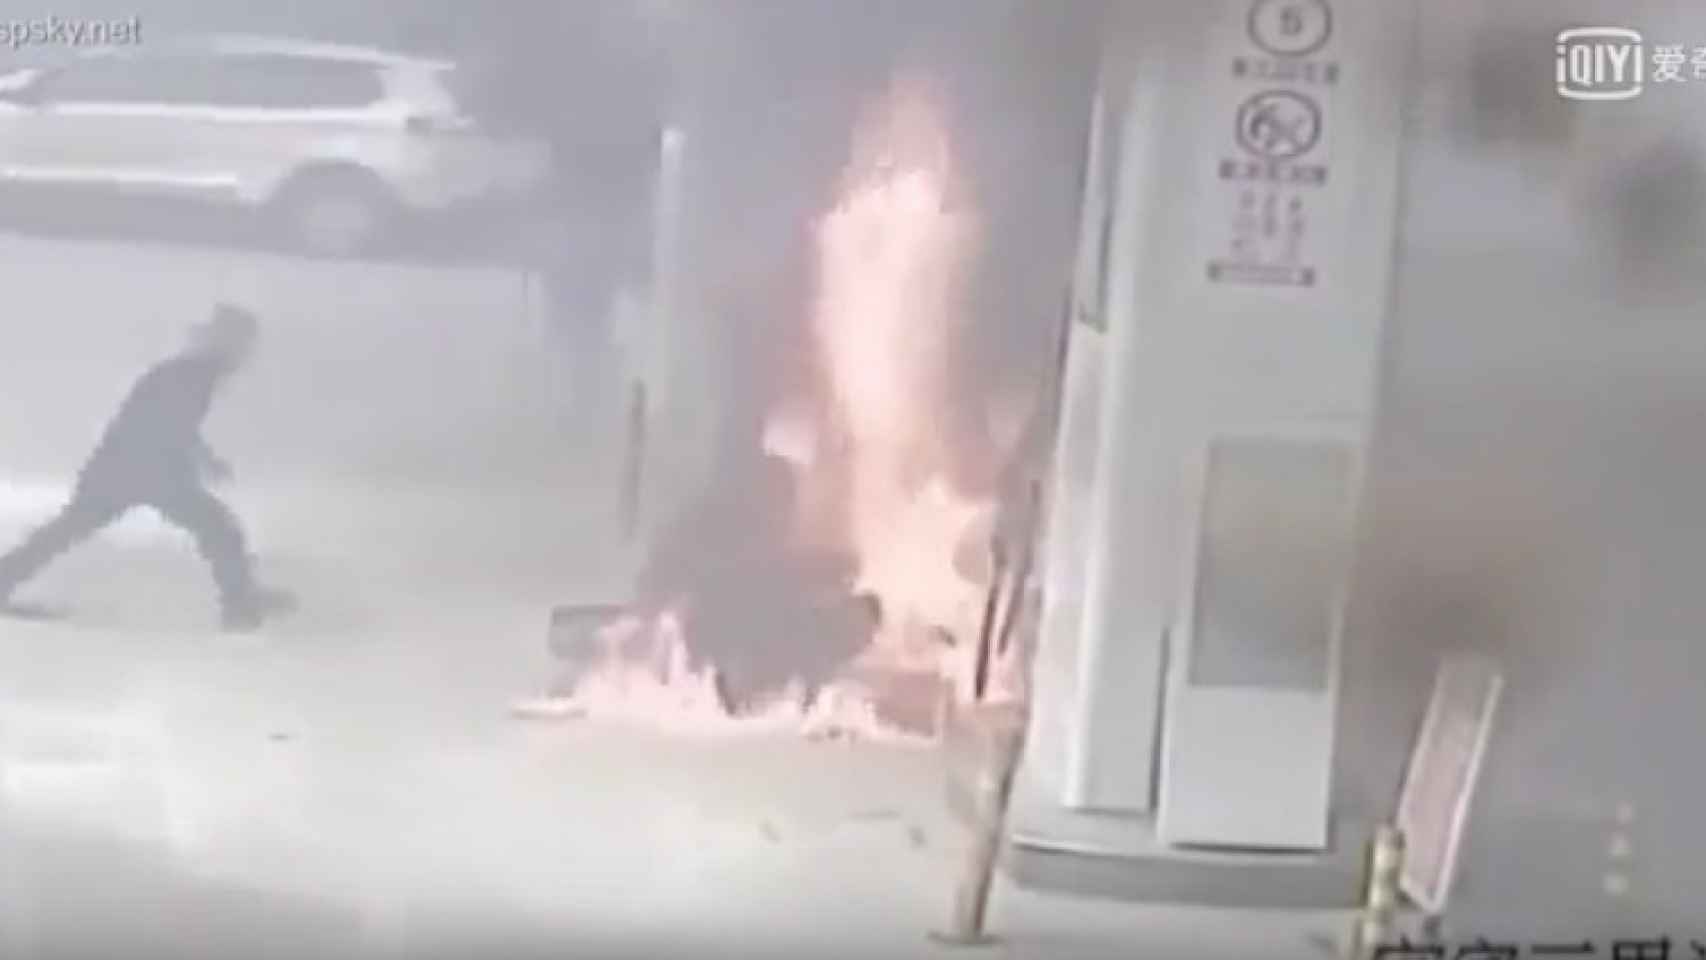 El incendio se propagó cuando la moto cayó encima de las bombas de gasoil